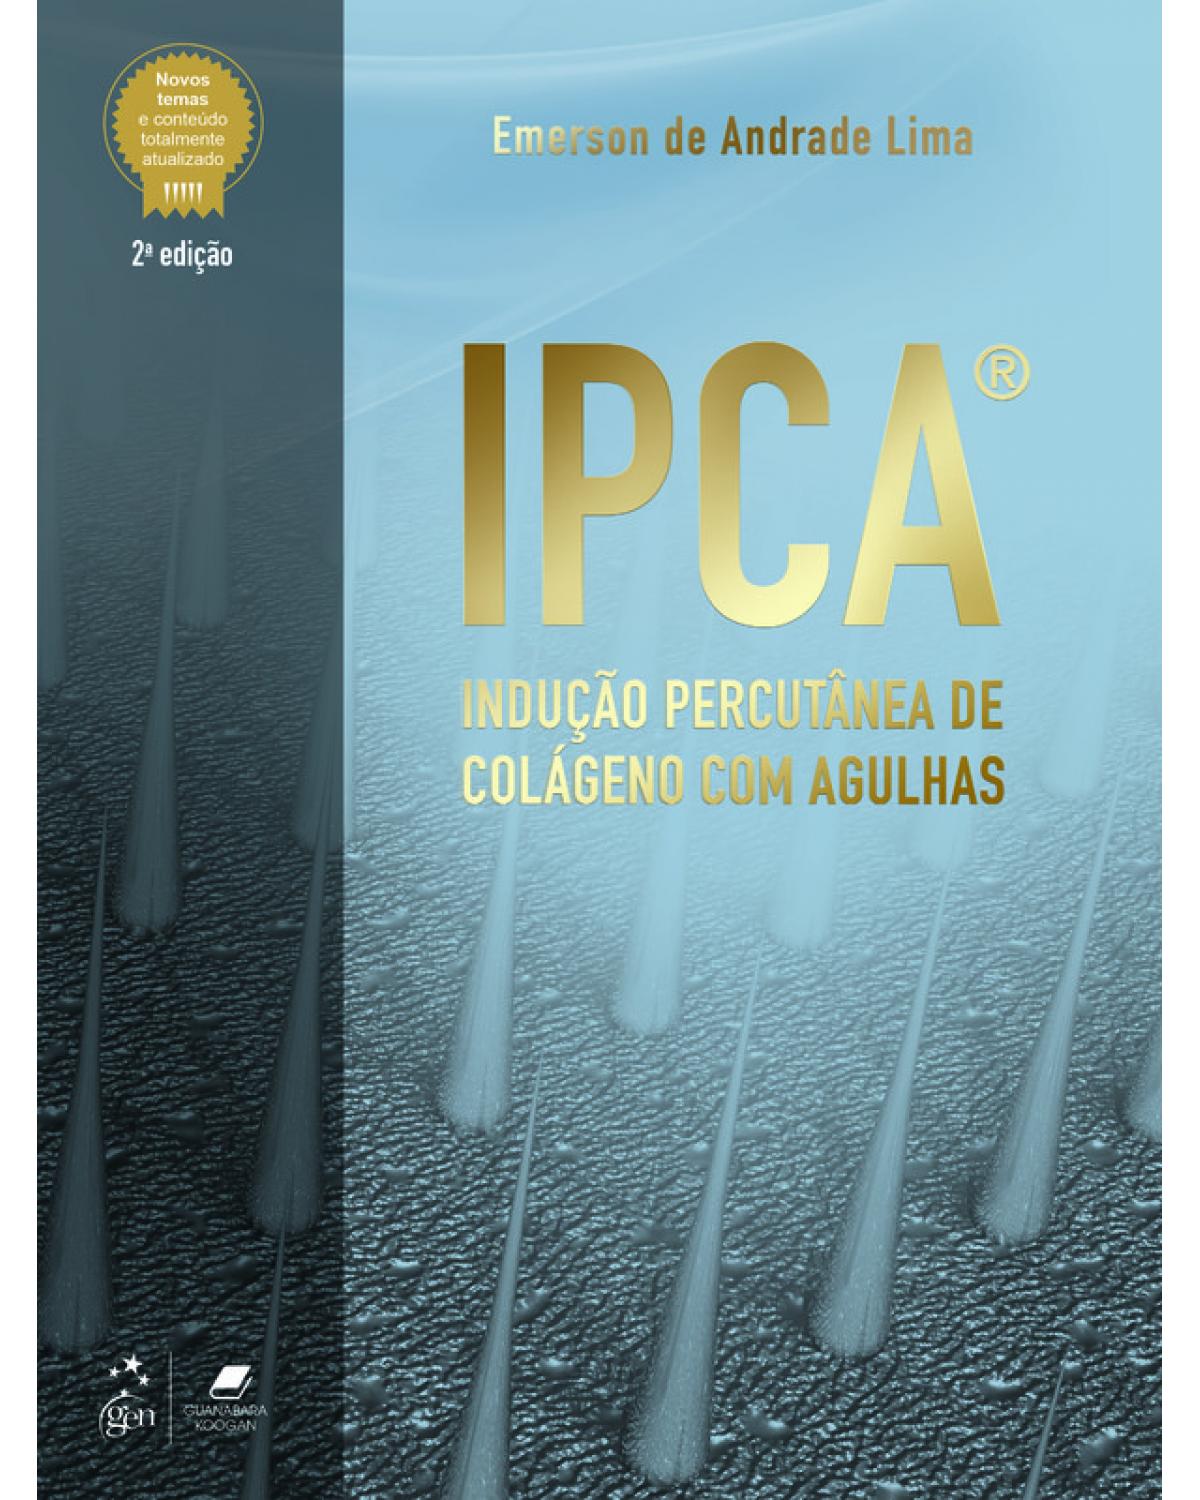 IPCA - Indução Percutânea de Colágeno com Agulhas - 2ª Edição | 2020